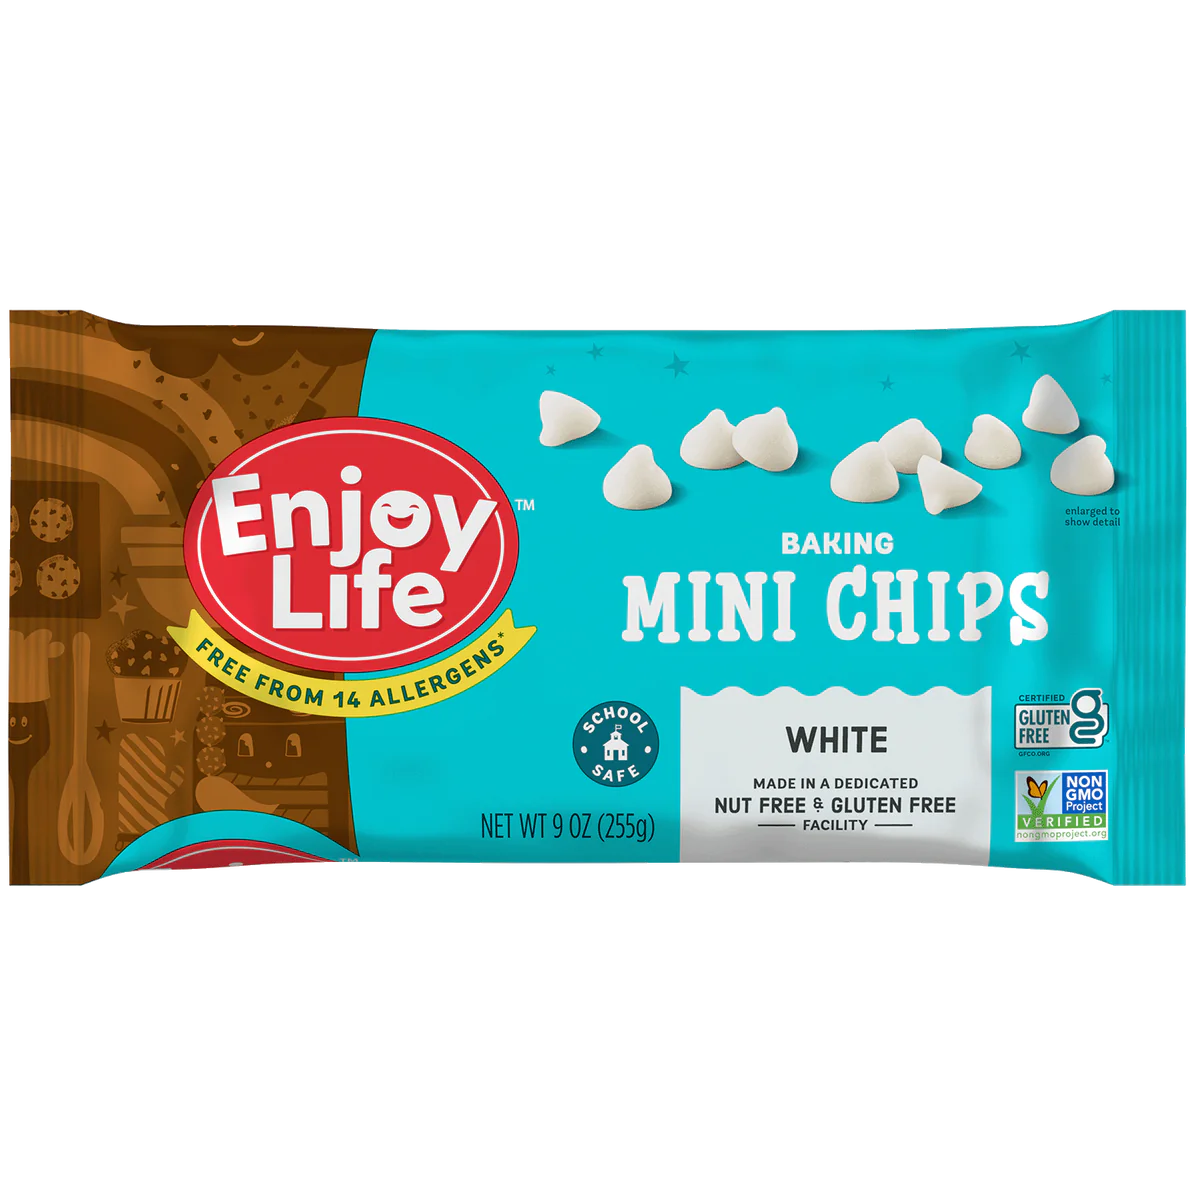 White Mini Chocolate Chips